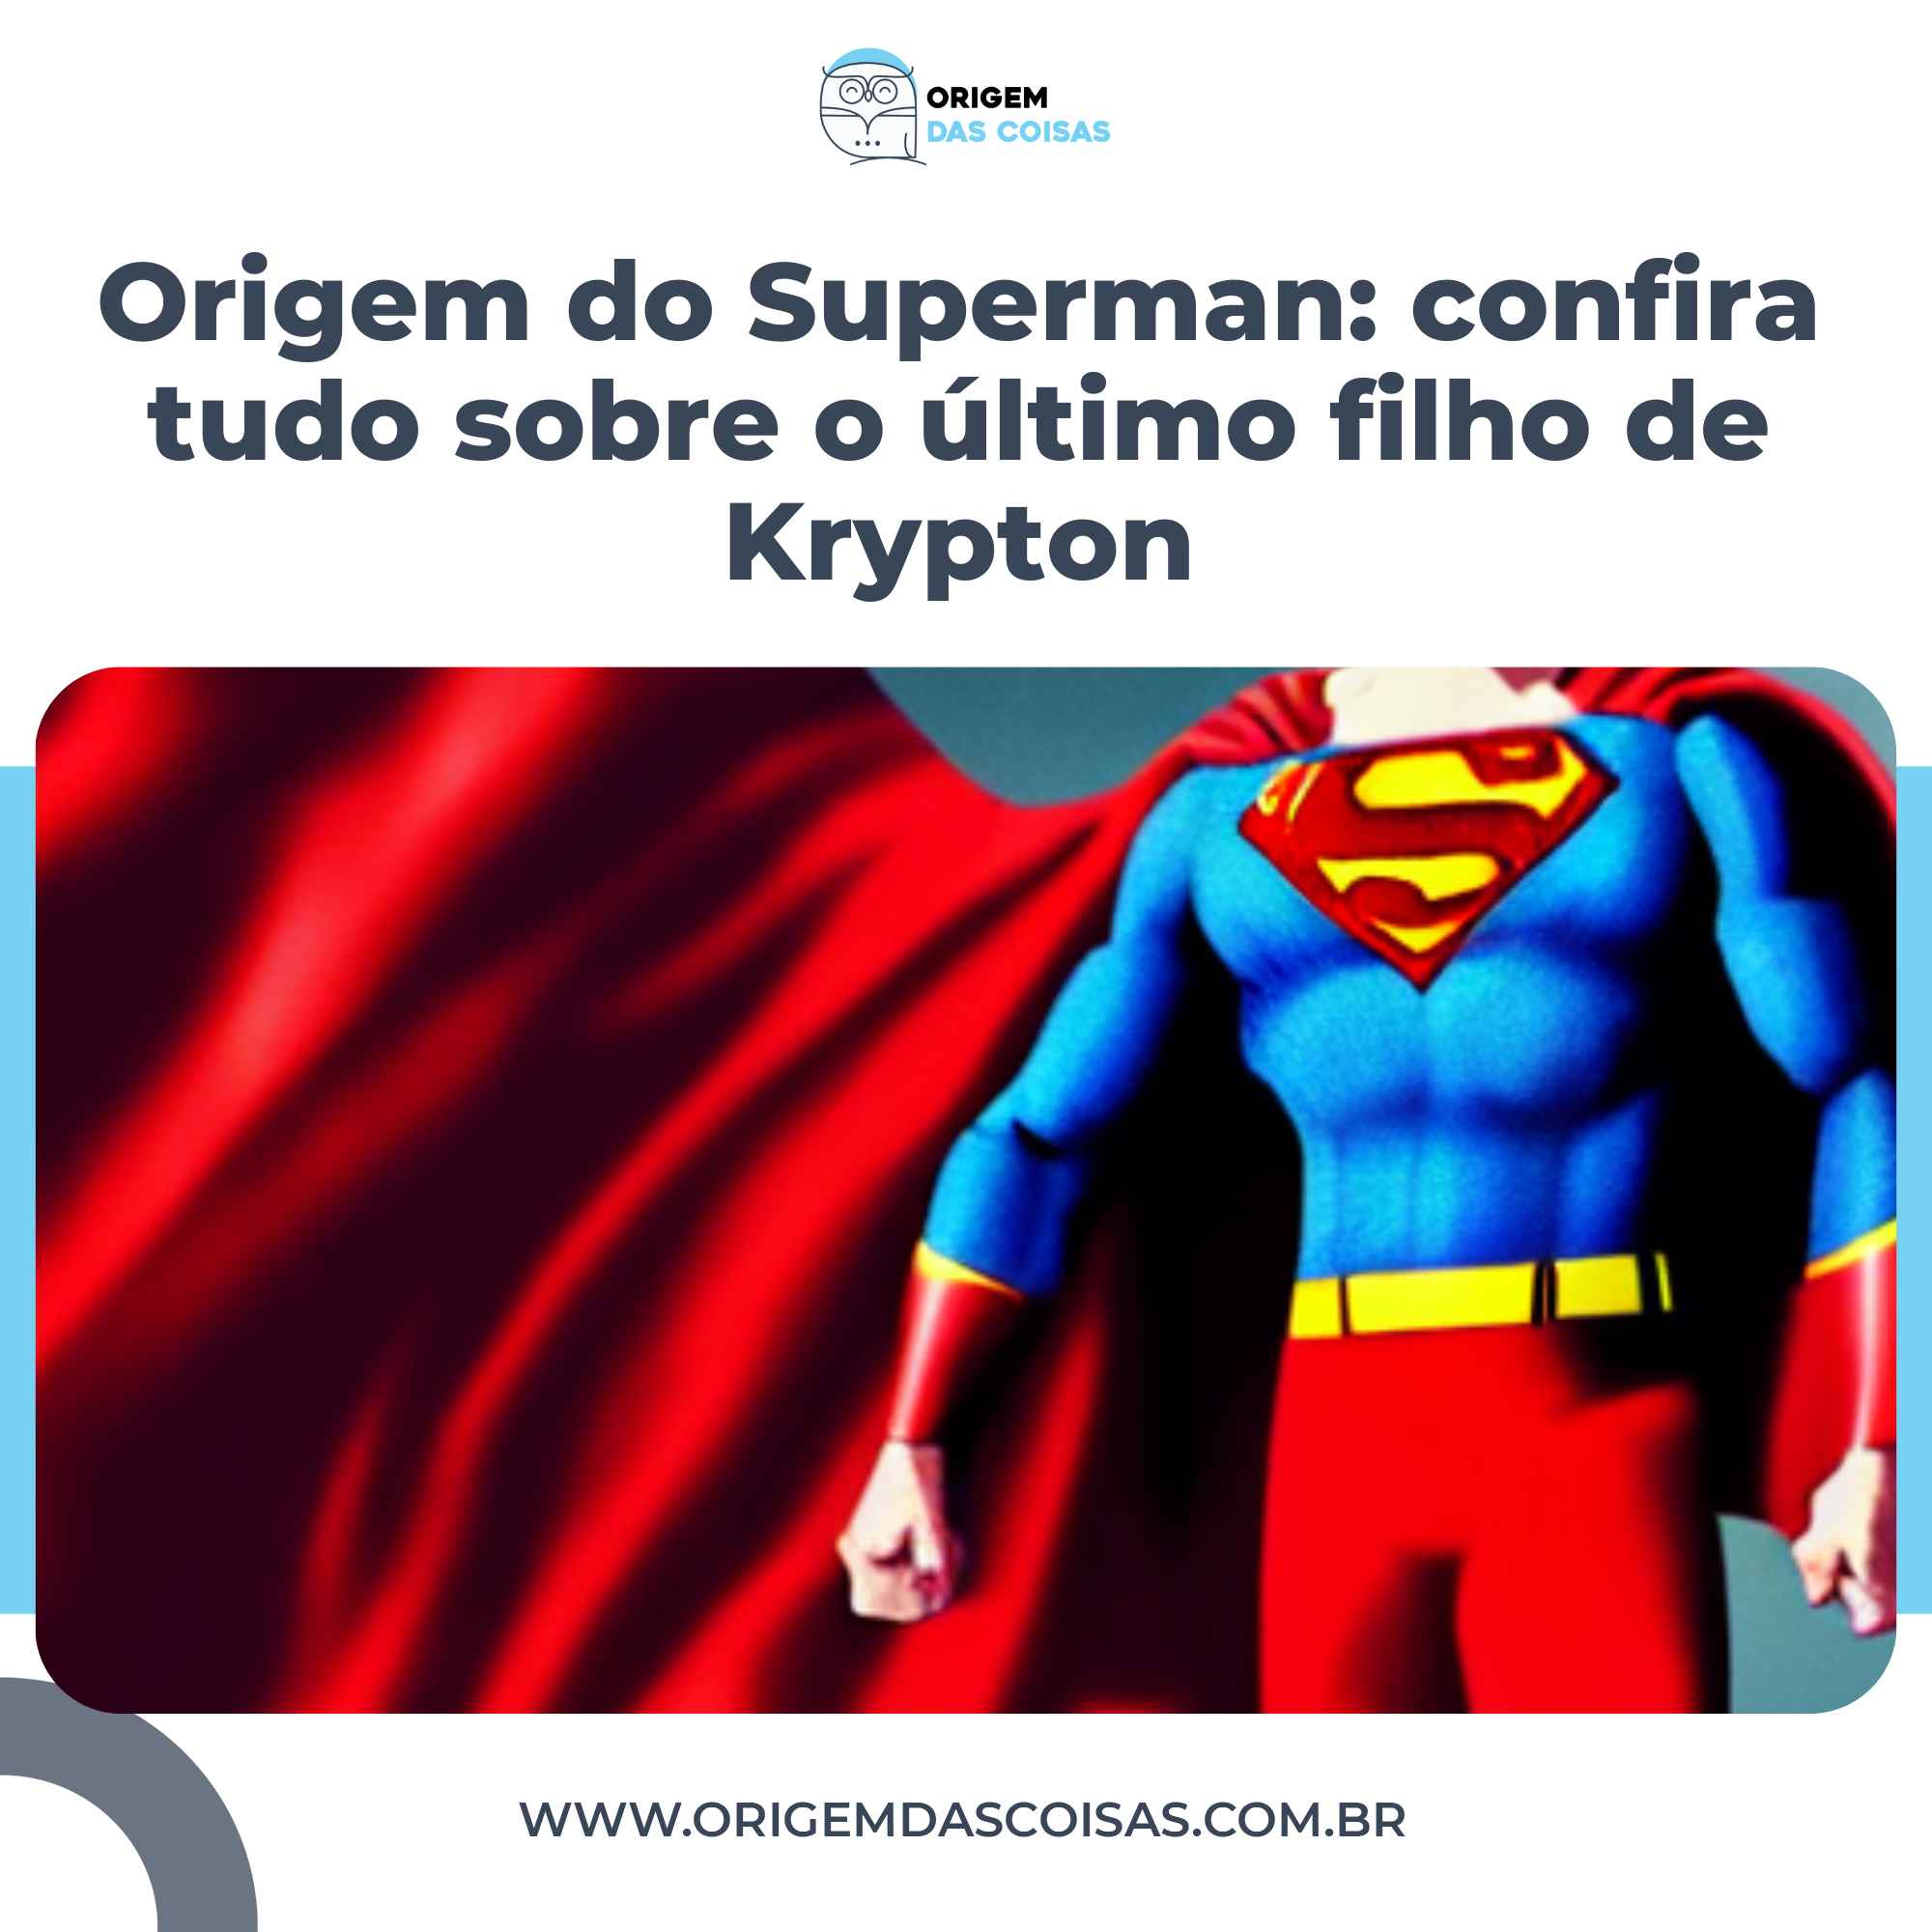 Origem do Superman confira tudo sobre o último filho de Krypton